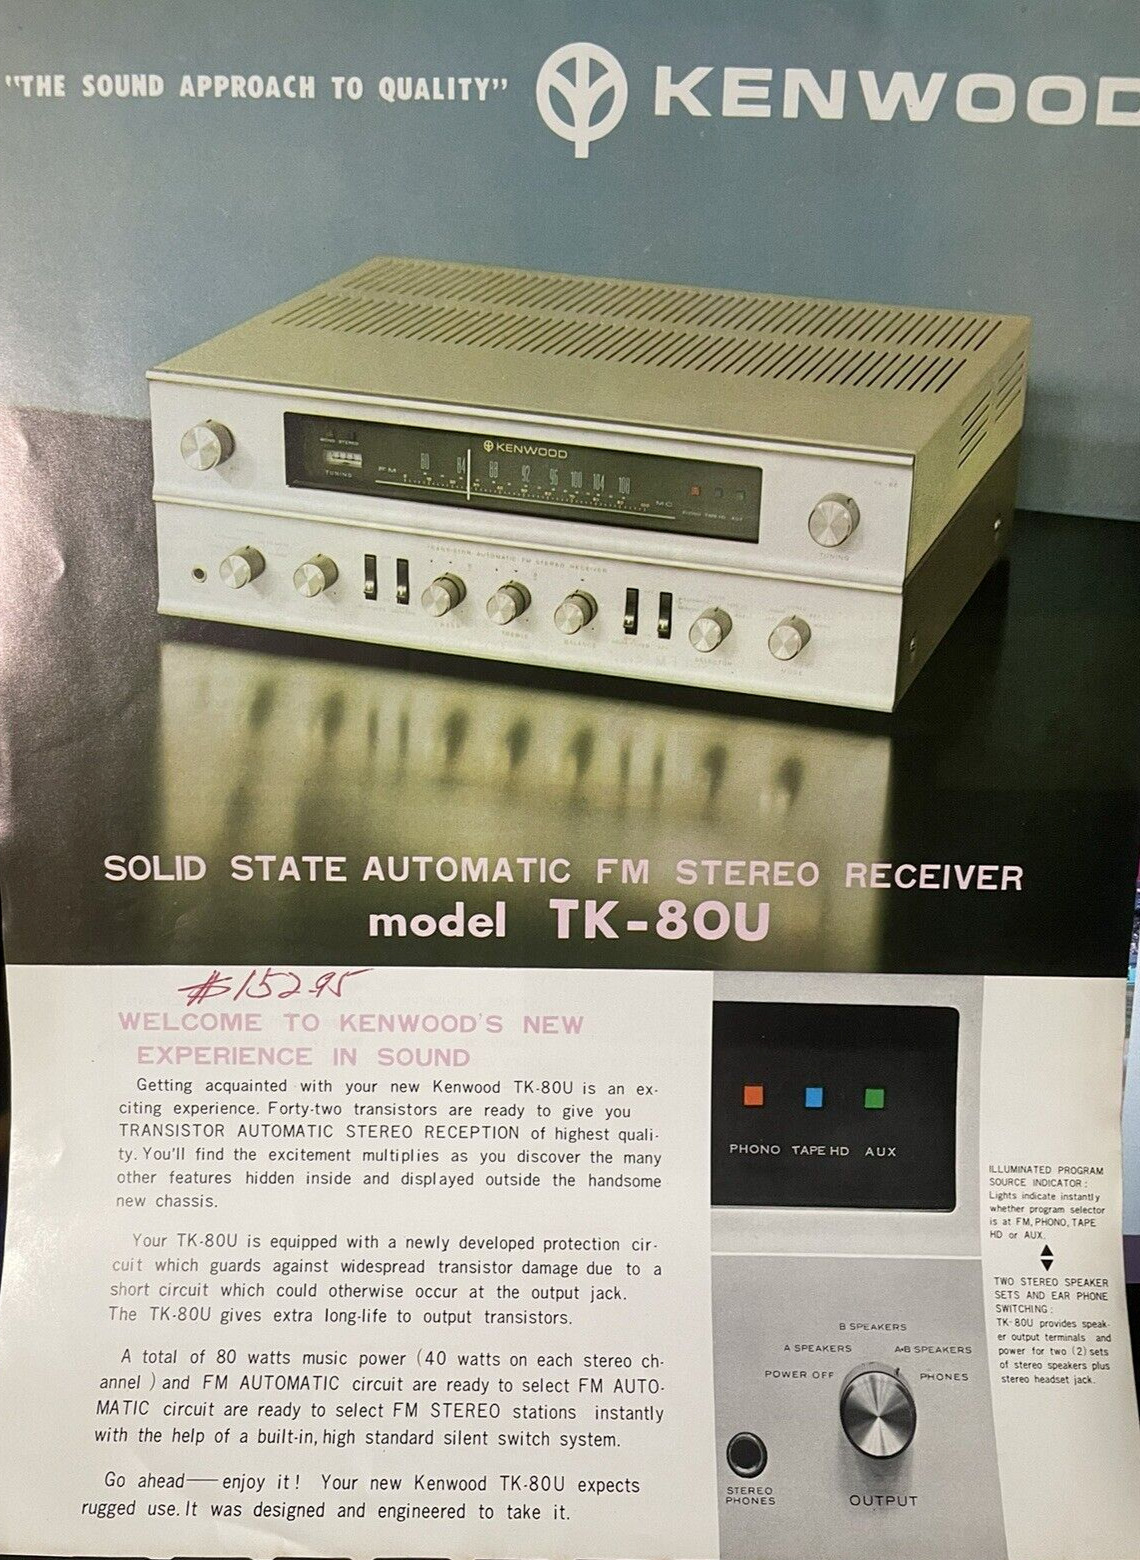 Kenwood TK-80U Print Ad Sales Brochures Trio Corp Receiver Japan Solid State